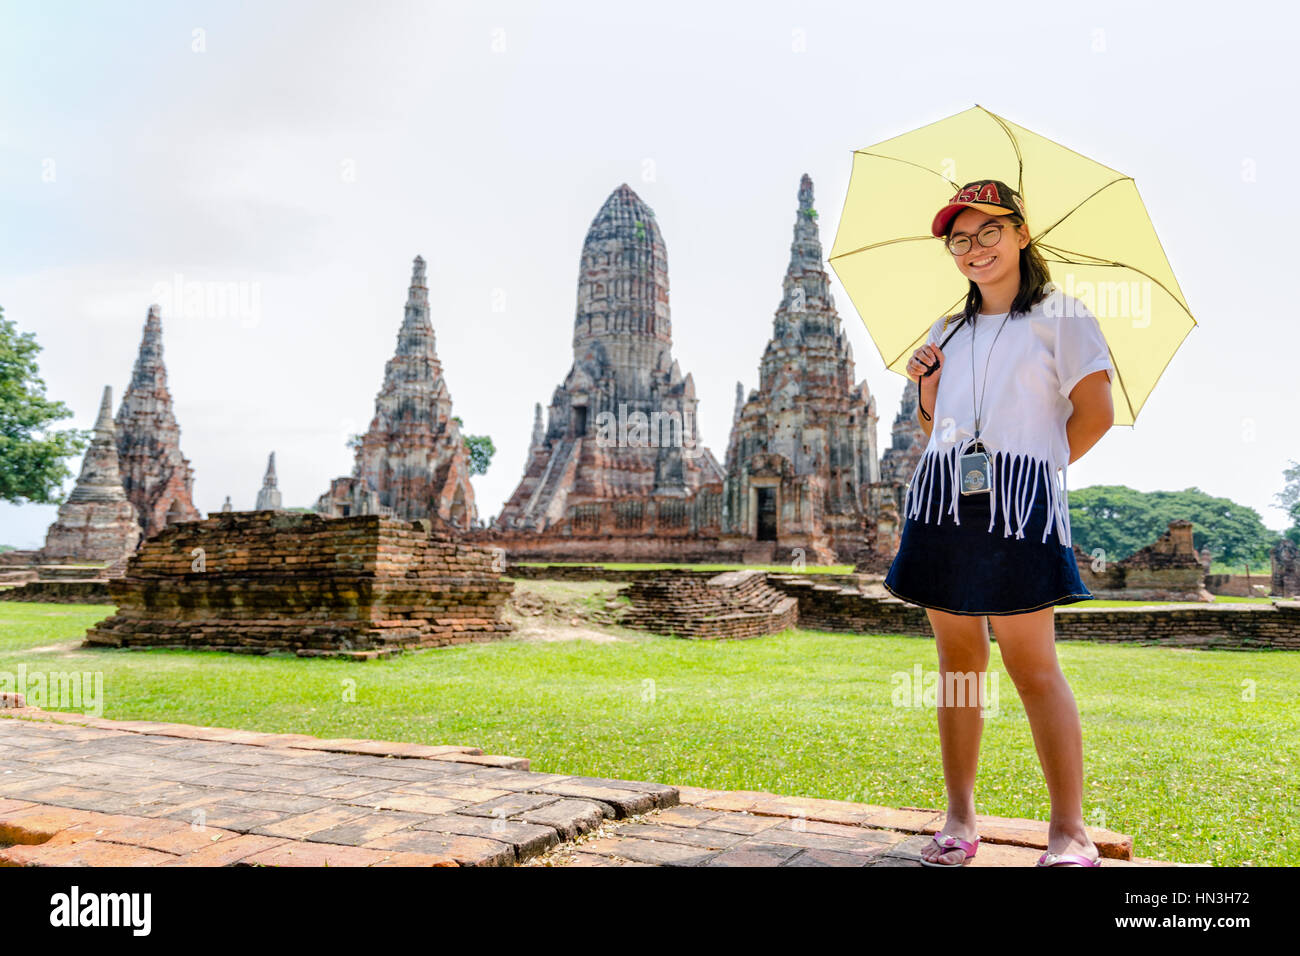 Turista lindo adolescente con gafas con una cámara en el cuello, mirando y sonrió felizmente sosteniendo el paraguas en el templo Wat Chaiwatthanaram antecedentes Foto de stock